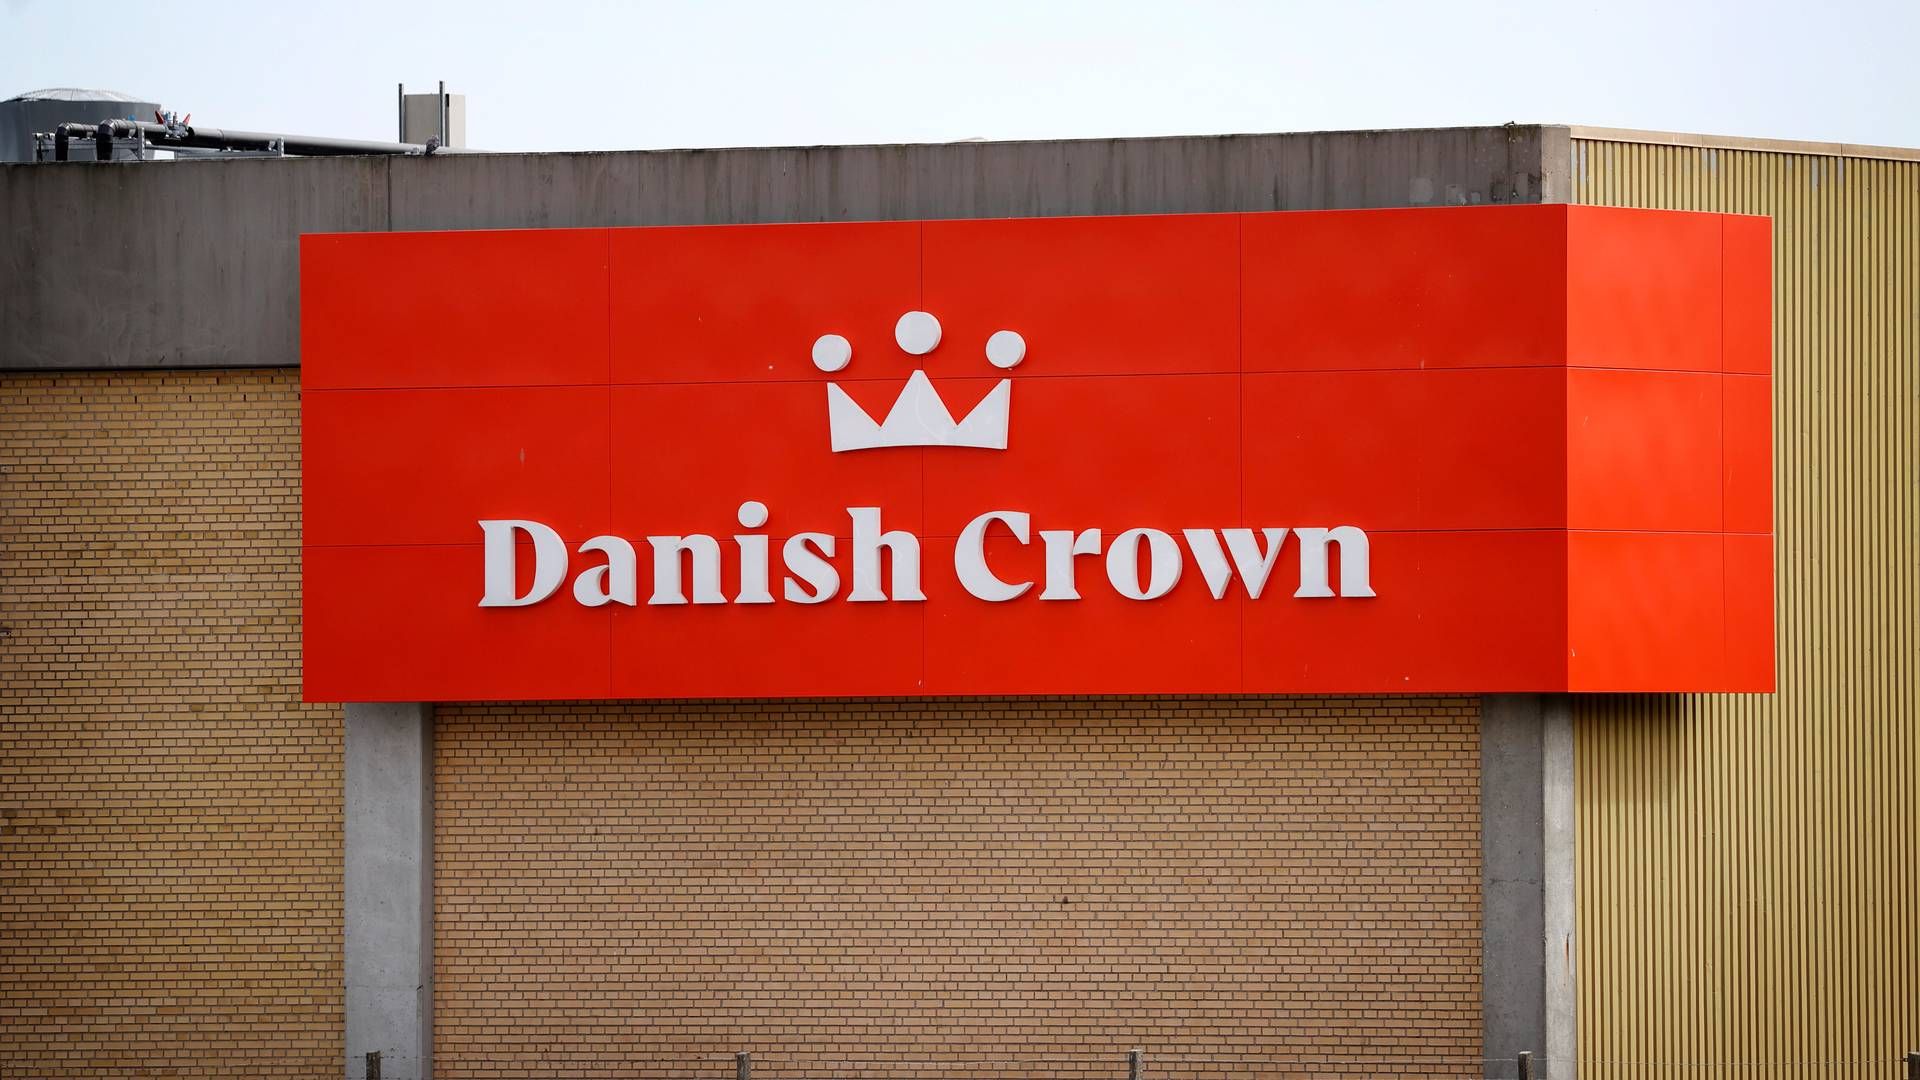 Brancher, som Danish Crown er en del af, er automatisk udsat for mere kritisk bevågenhed og dermed i større risiko for at blive anklaget for greenwashing, forklarer selvstændig PR- og kommunikationsrådgiver Pernille Winge. | Foto: Jens Dresling/Ritzau Scanpix